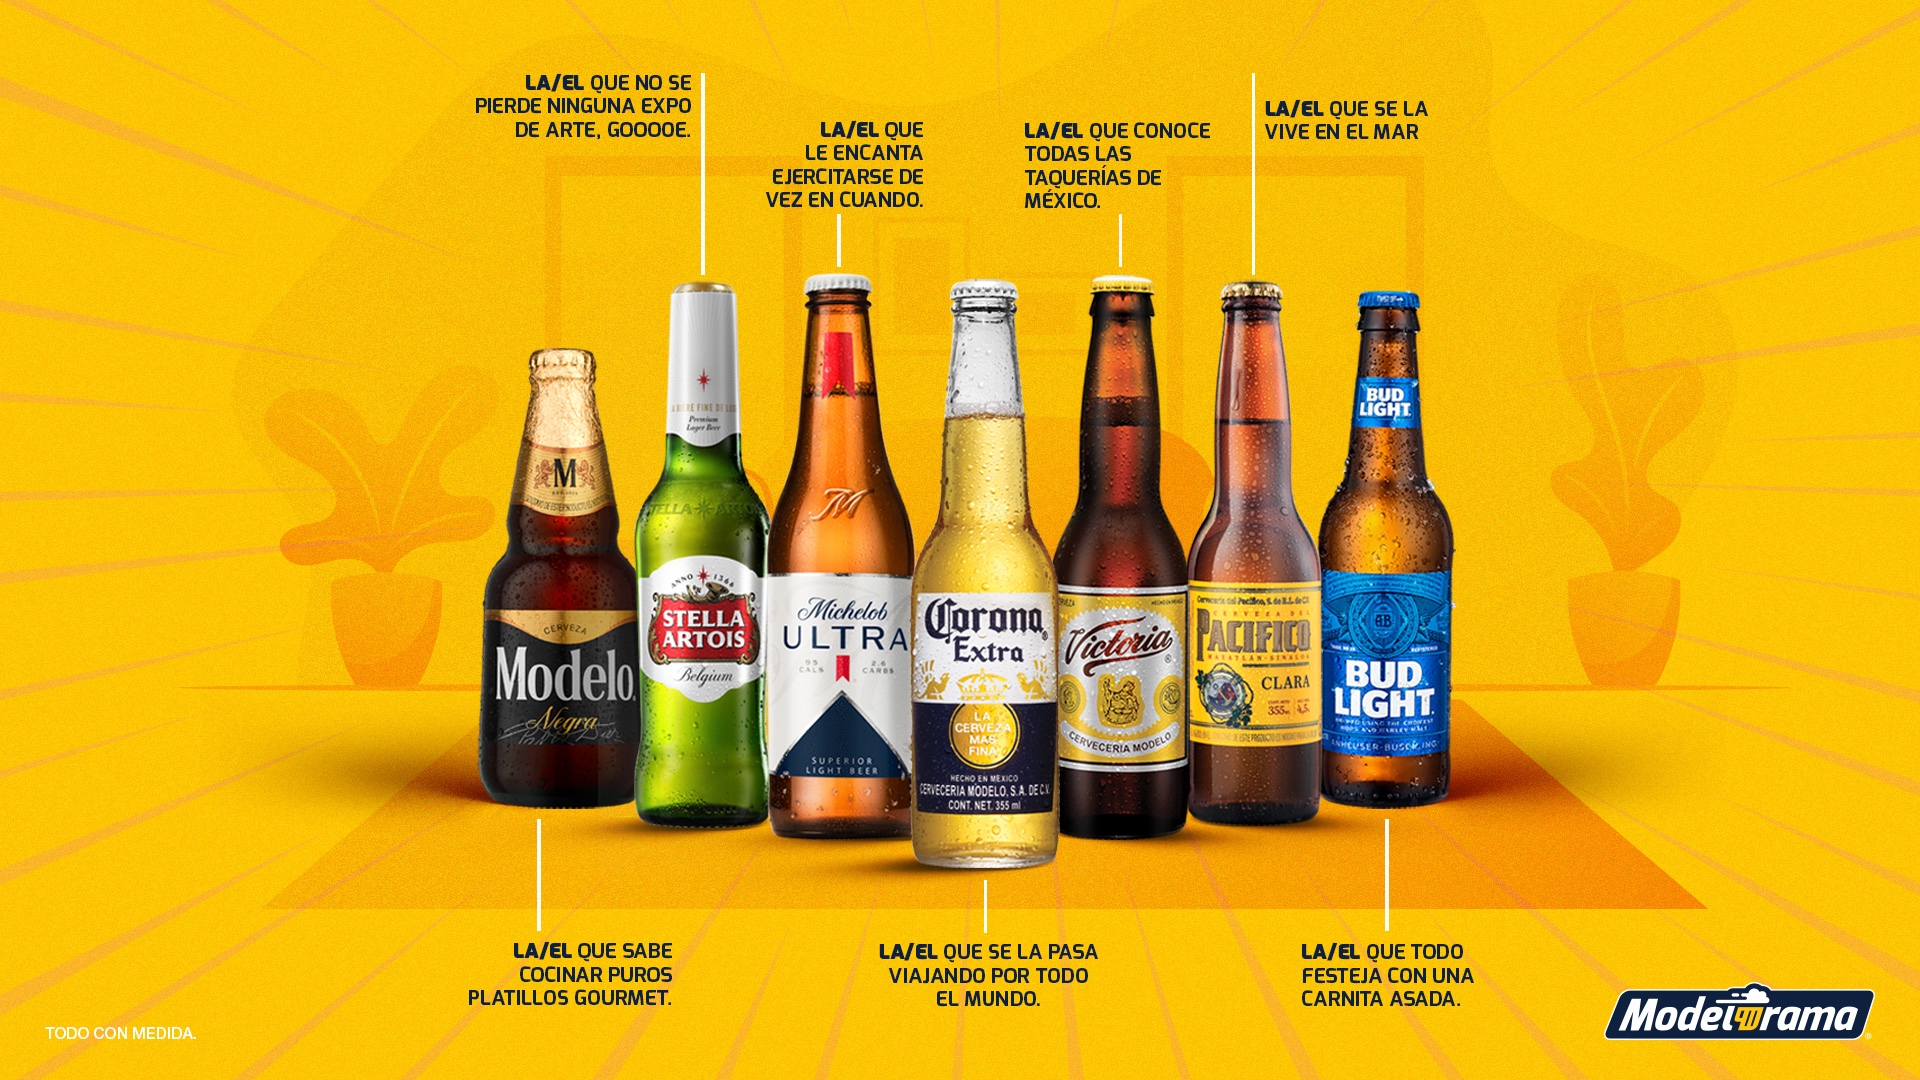 Grupo Modelo anuncia disminución de precios en sus cervezas – Códice  Informativo – Historias basadas en datos